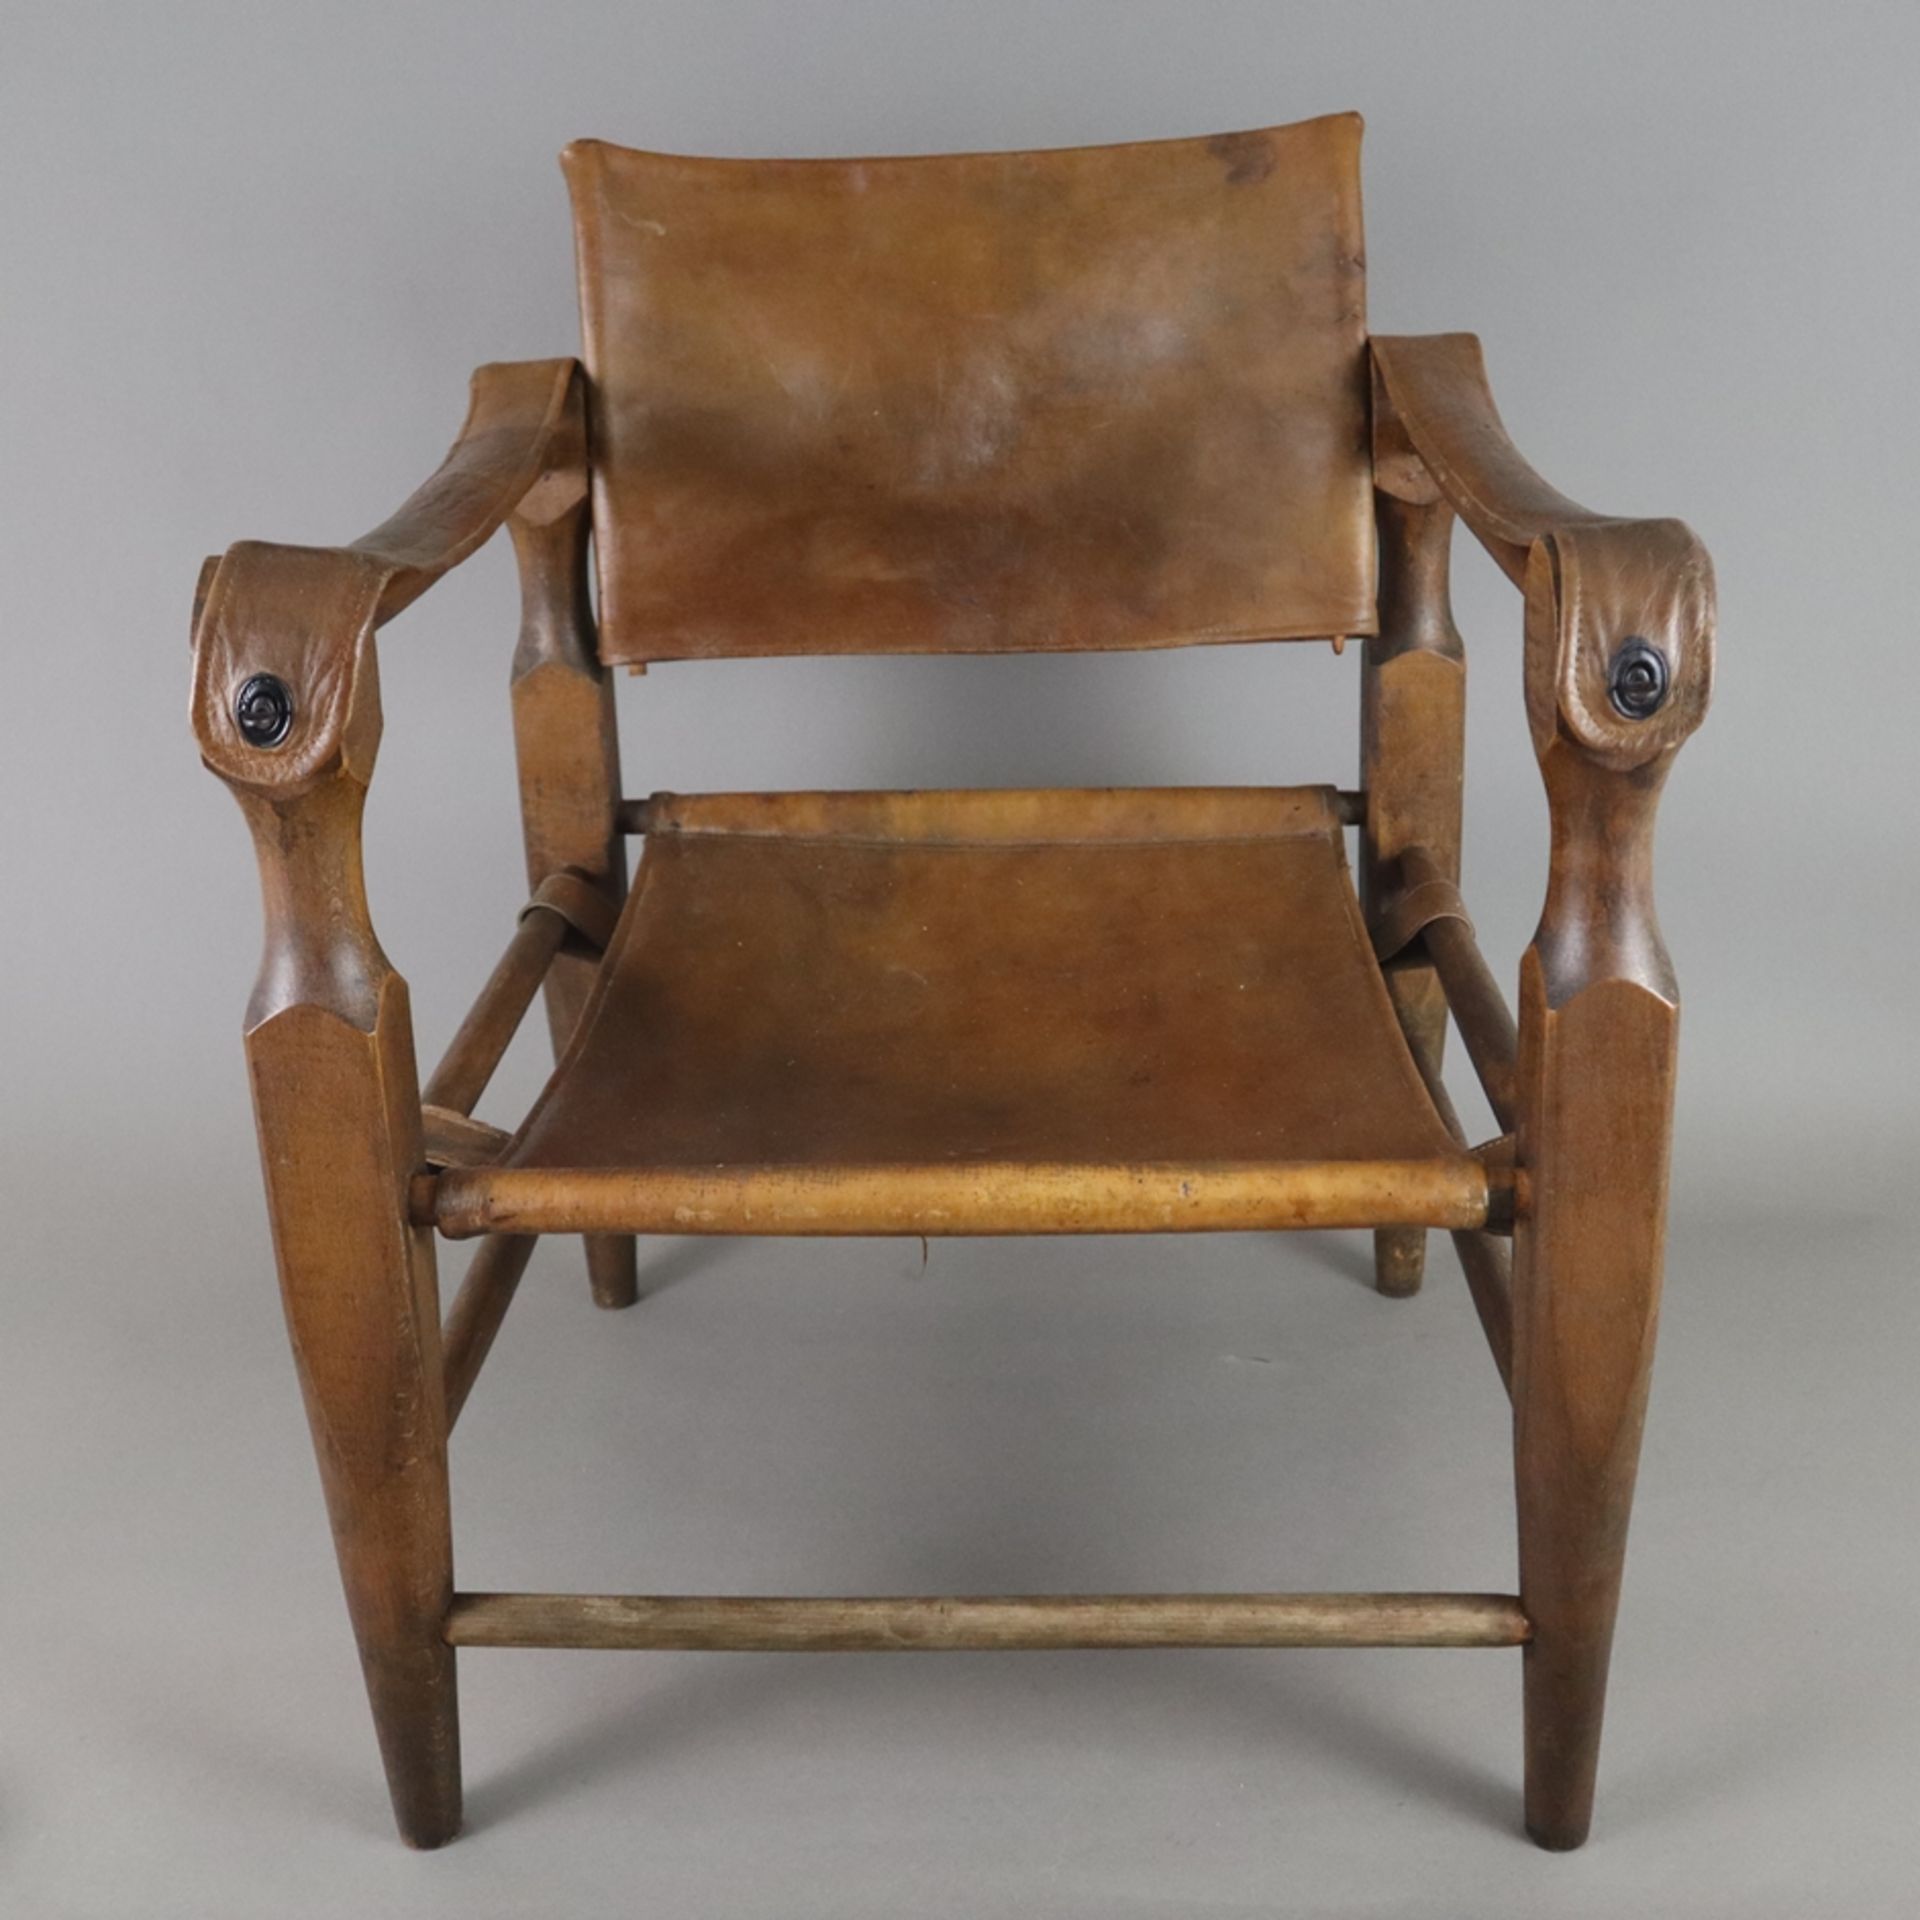 Armlehnstuhl "Safari-Chair" - Entwurf: Wilhelm Kienzle (1928), Ausführung: Wohnbedarf, Zürich, 1960 - Bild 2 aus 9